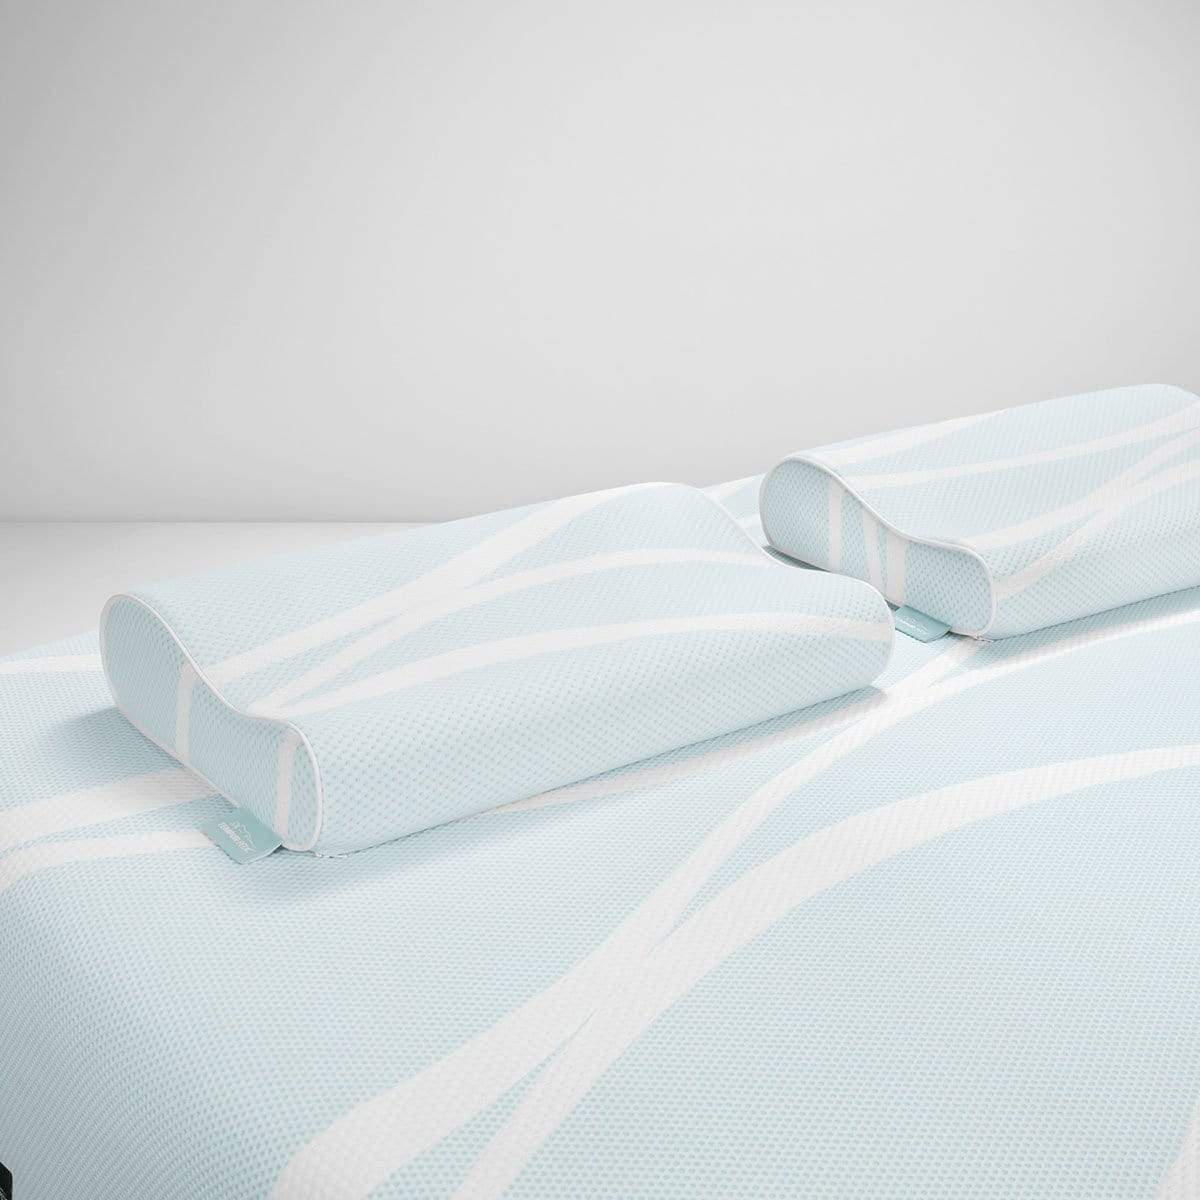 TEMPUR-Breeze Cooling Neck Pillows by TEMPUR-Pedic on a mattress